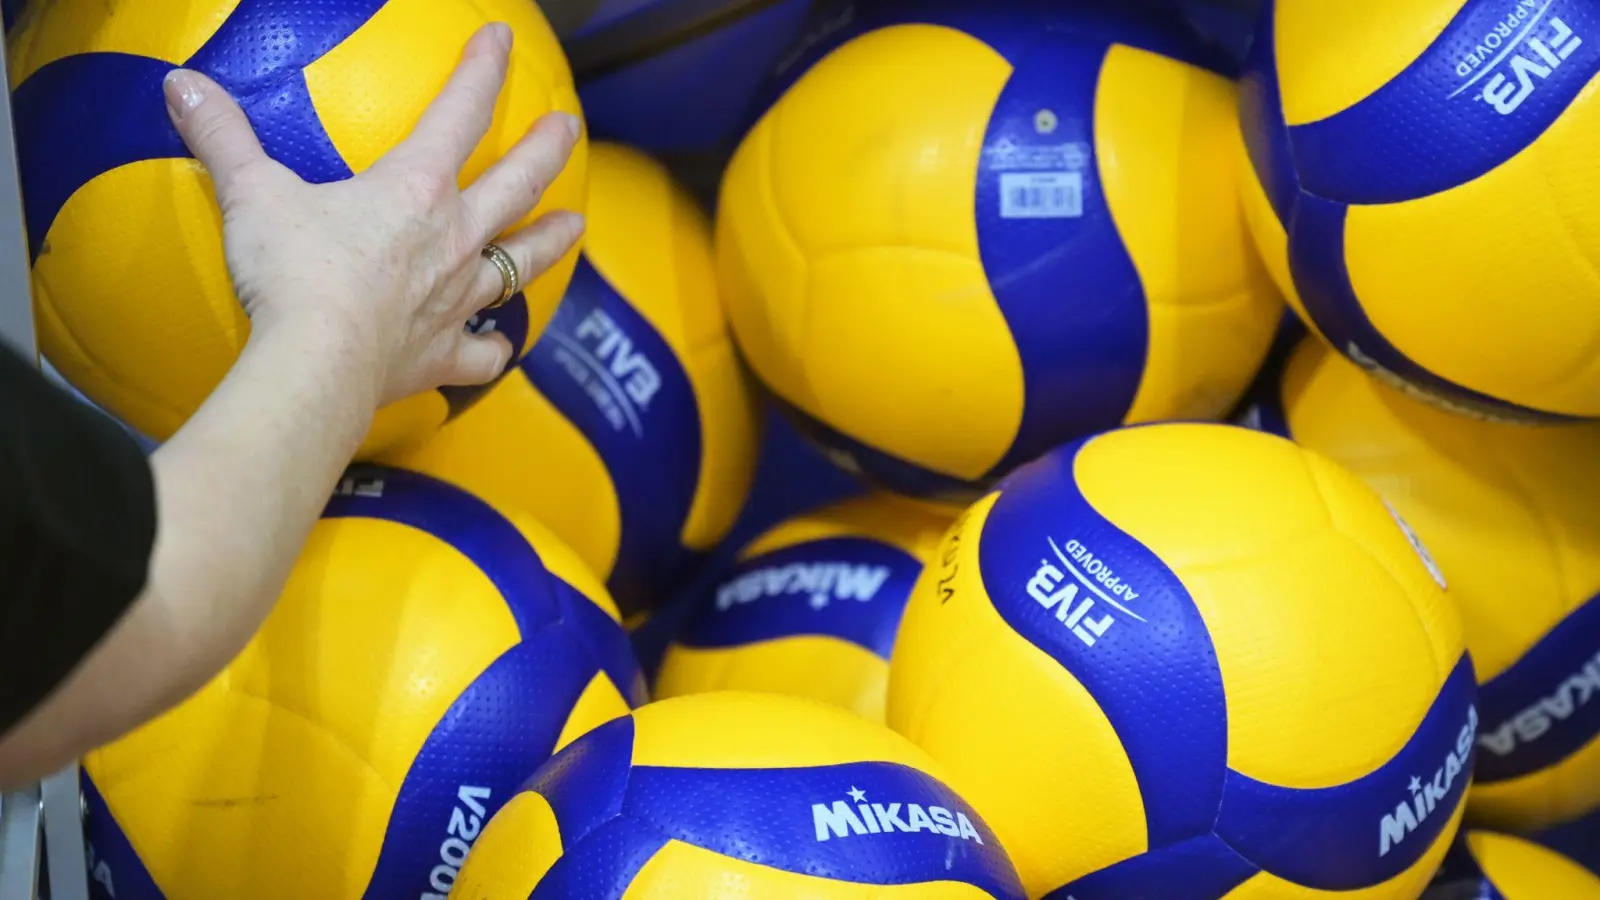 Volleyball-Spielbälle liegen auf einem Haufen. (Foto: Soeren Stache/dpa-Zentralbild/dpa/Symbolbild)